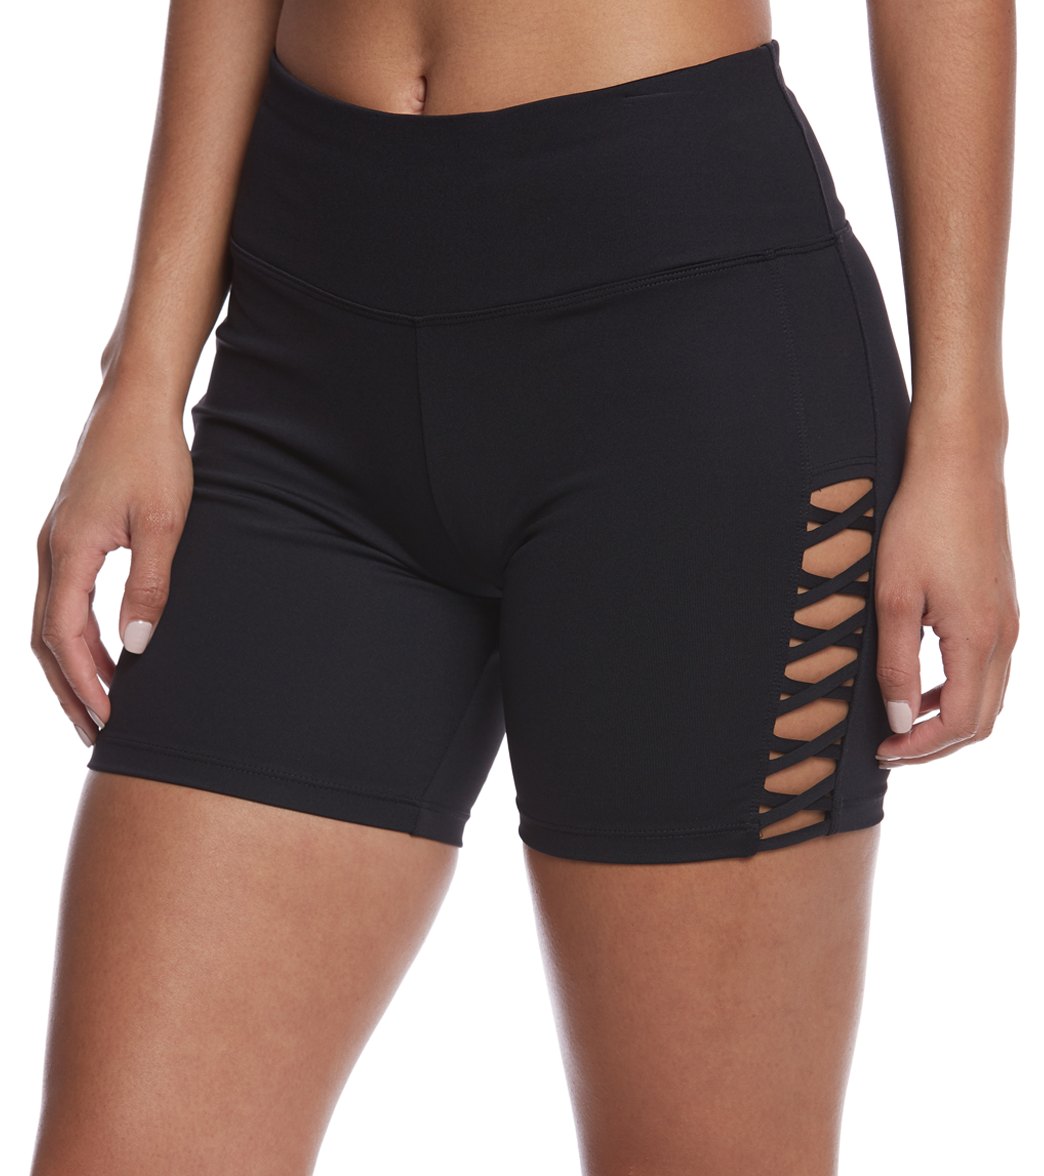 Betsey Johnson Micro-X Banded Cutout Long Yoga Shorts